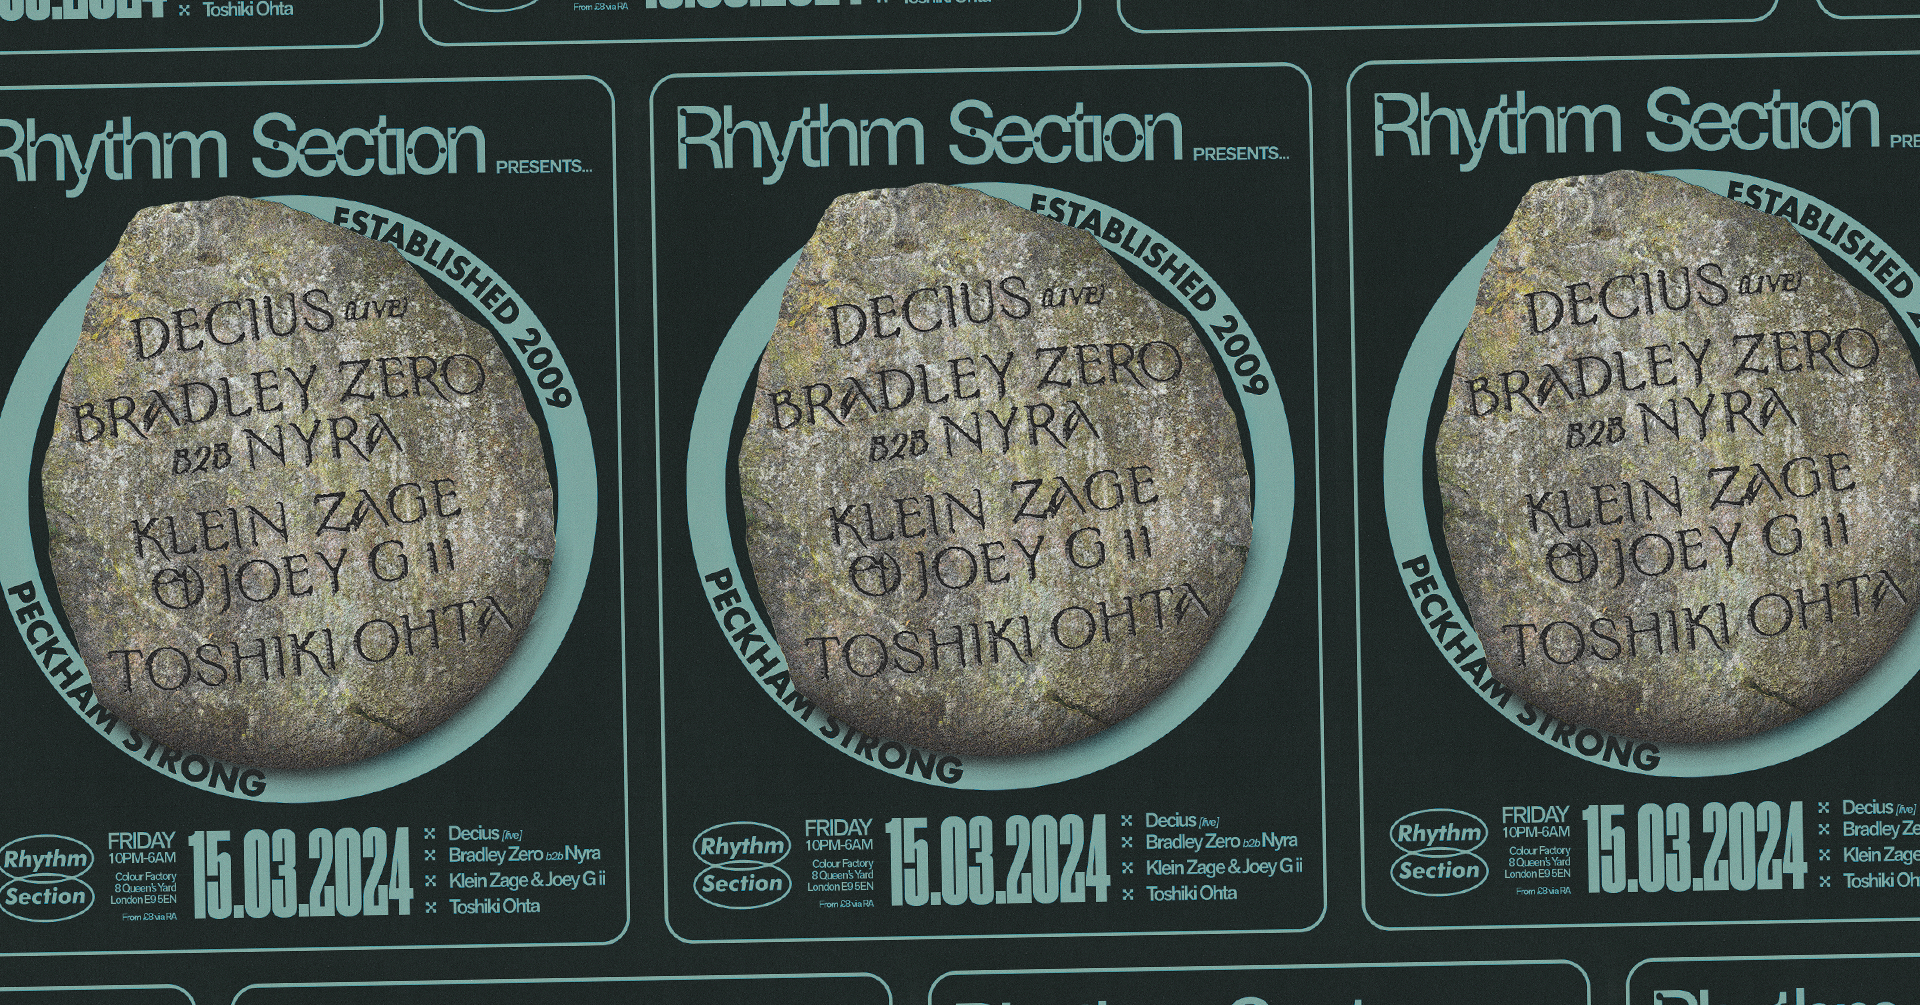 Rhythm Section with Decius (live), Bradley Zero b2b Nyra, Tosh, Klein Zage + Joey G ii - フライヤー表